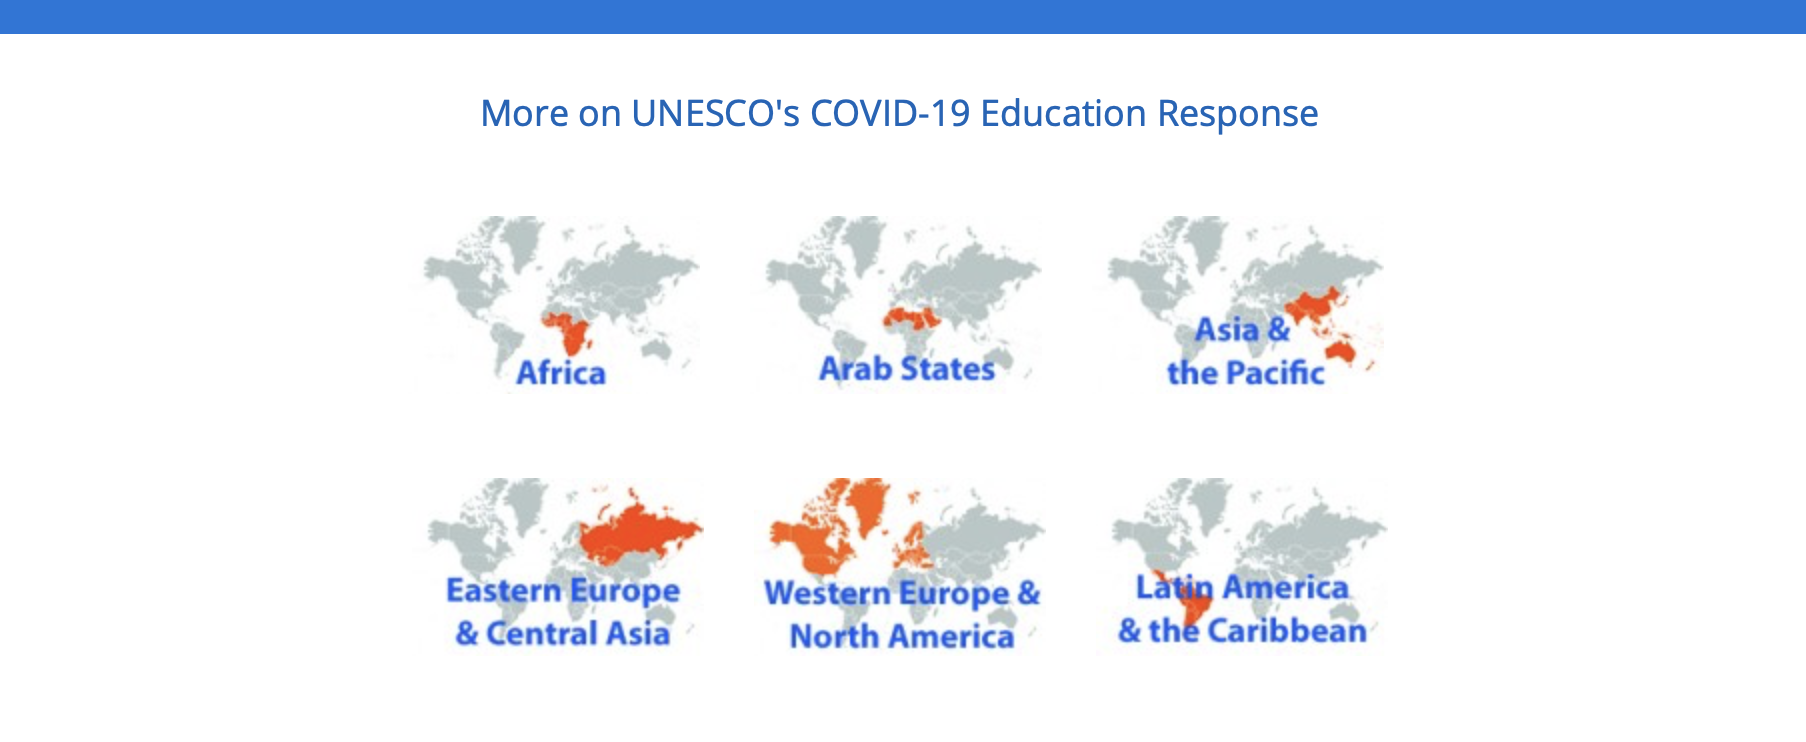 Liderança da UNESCO para aliviar o impacto da COVID-19 no desenvolvimento educacional das comunidades mais vulneráveis